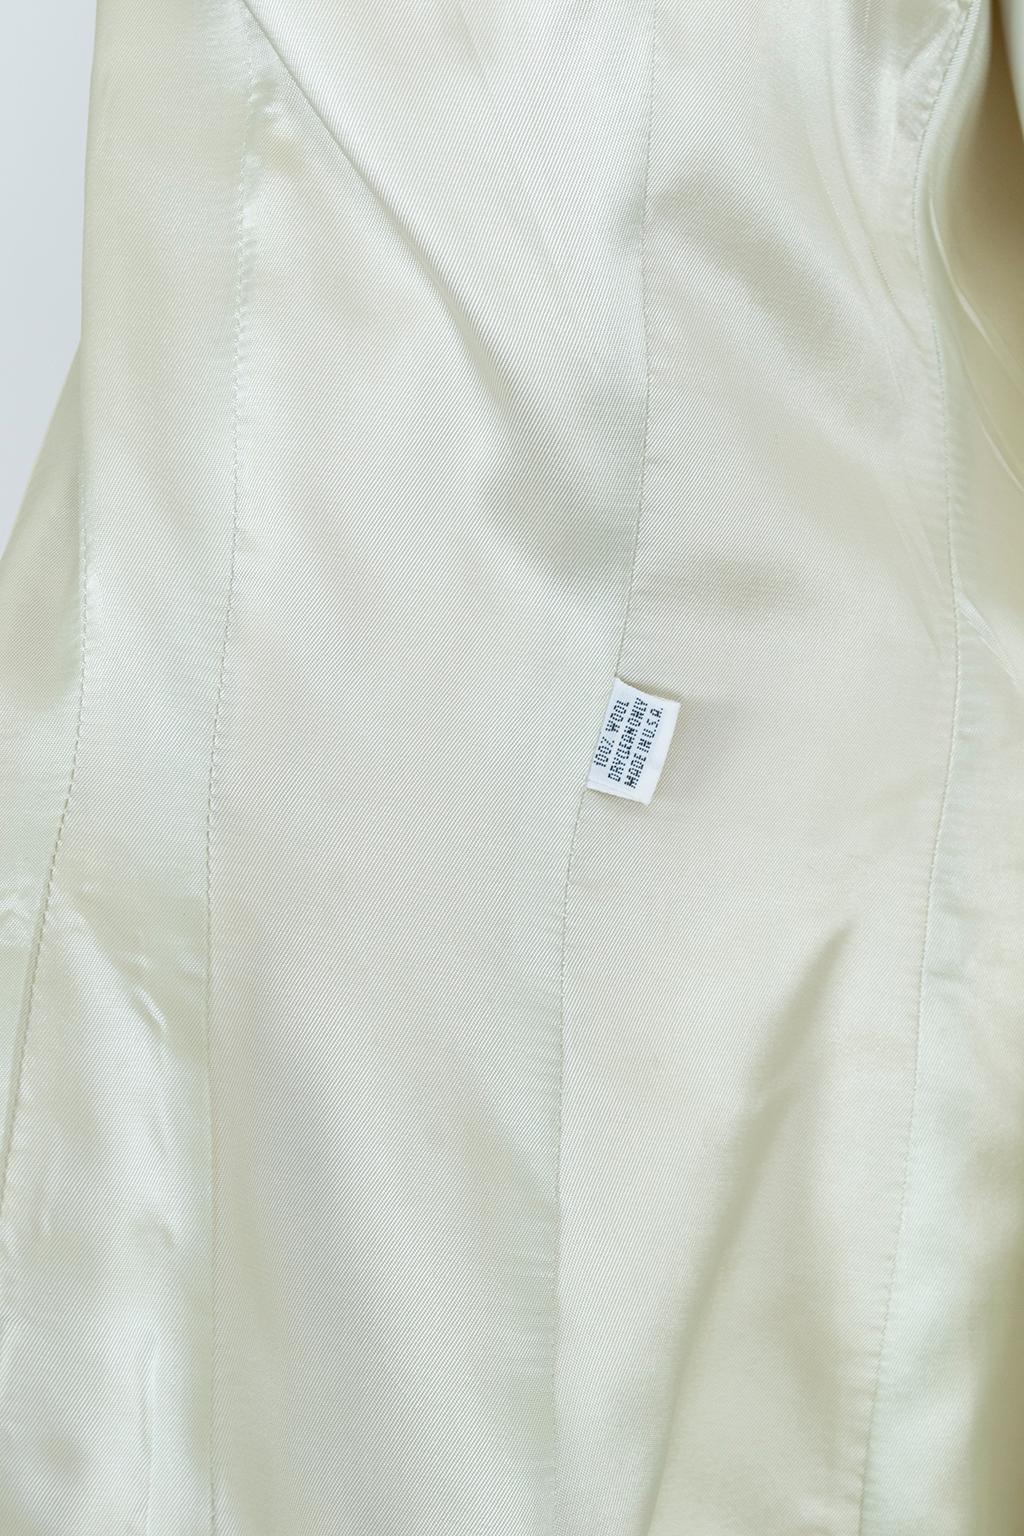 Norma Kamali Ivory Wool Dioresque Sculpted Bar Jacket Peplum Blazer - XS, 1980s 6